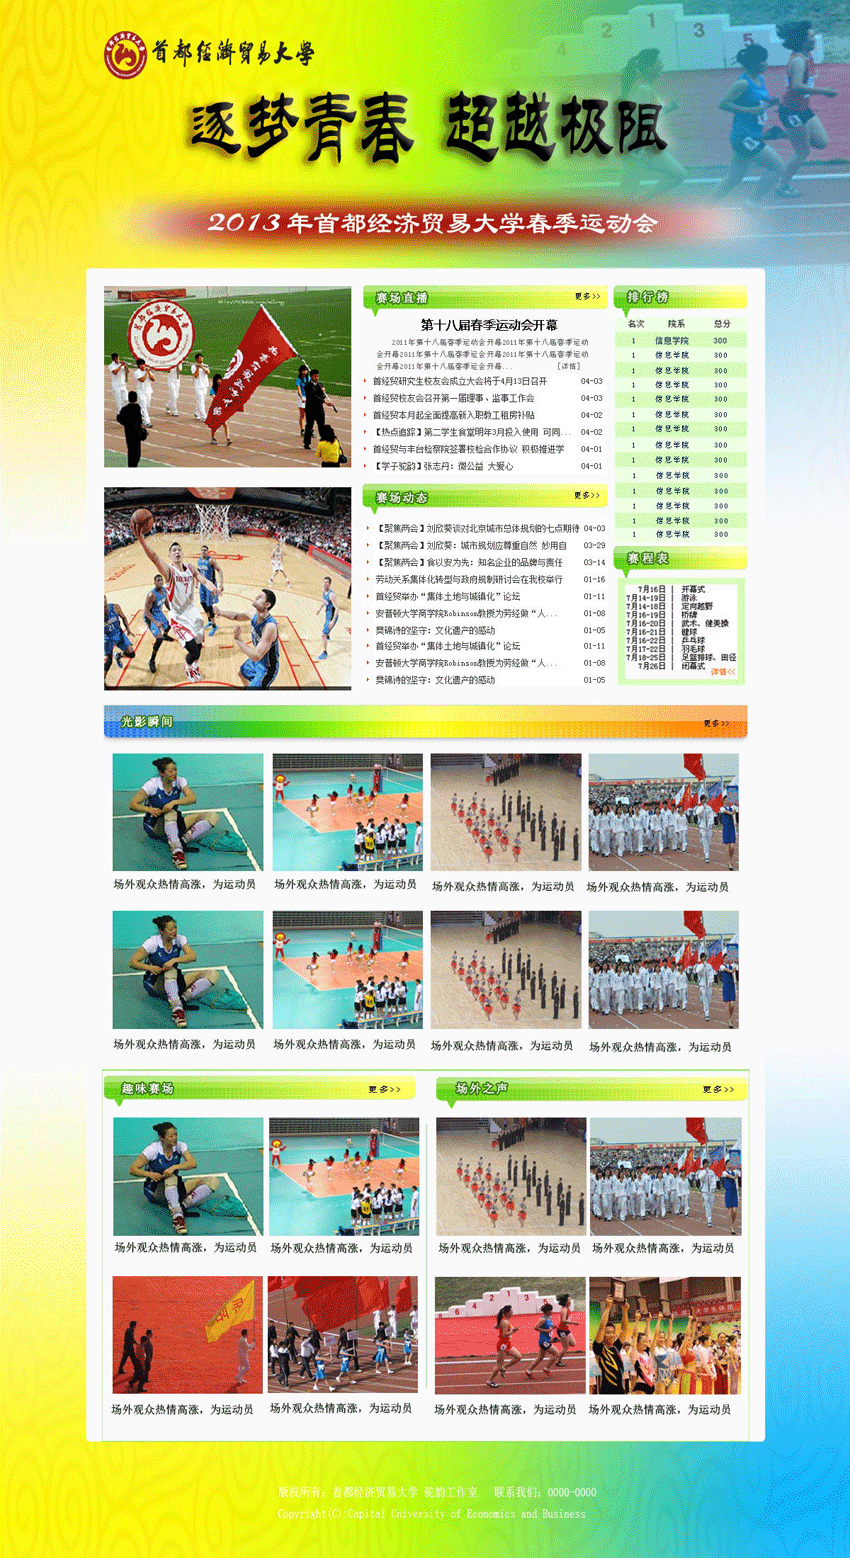 学校运动会专题页面设计模板psd分层素材下载